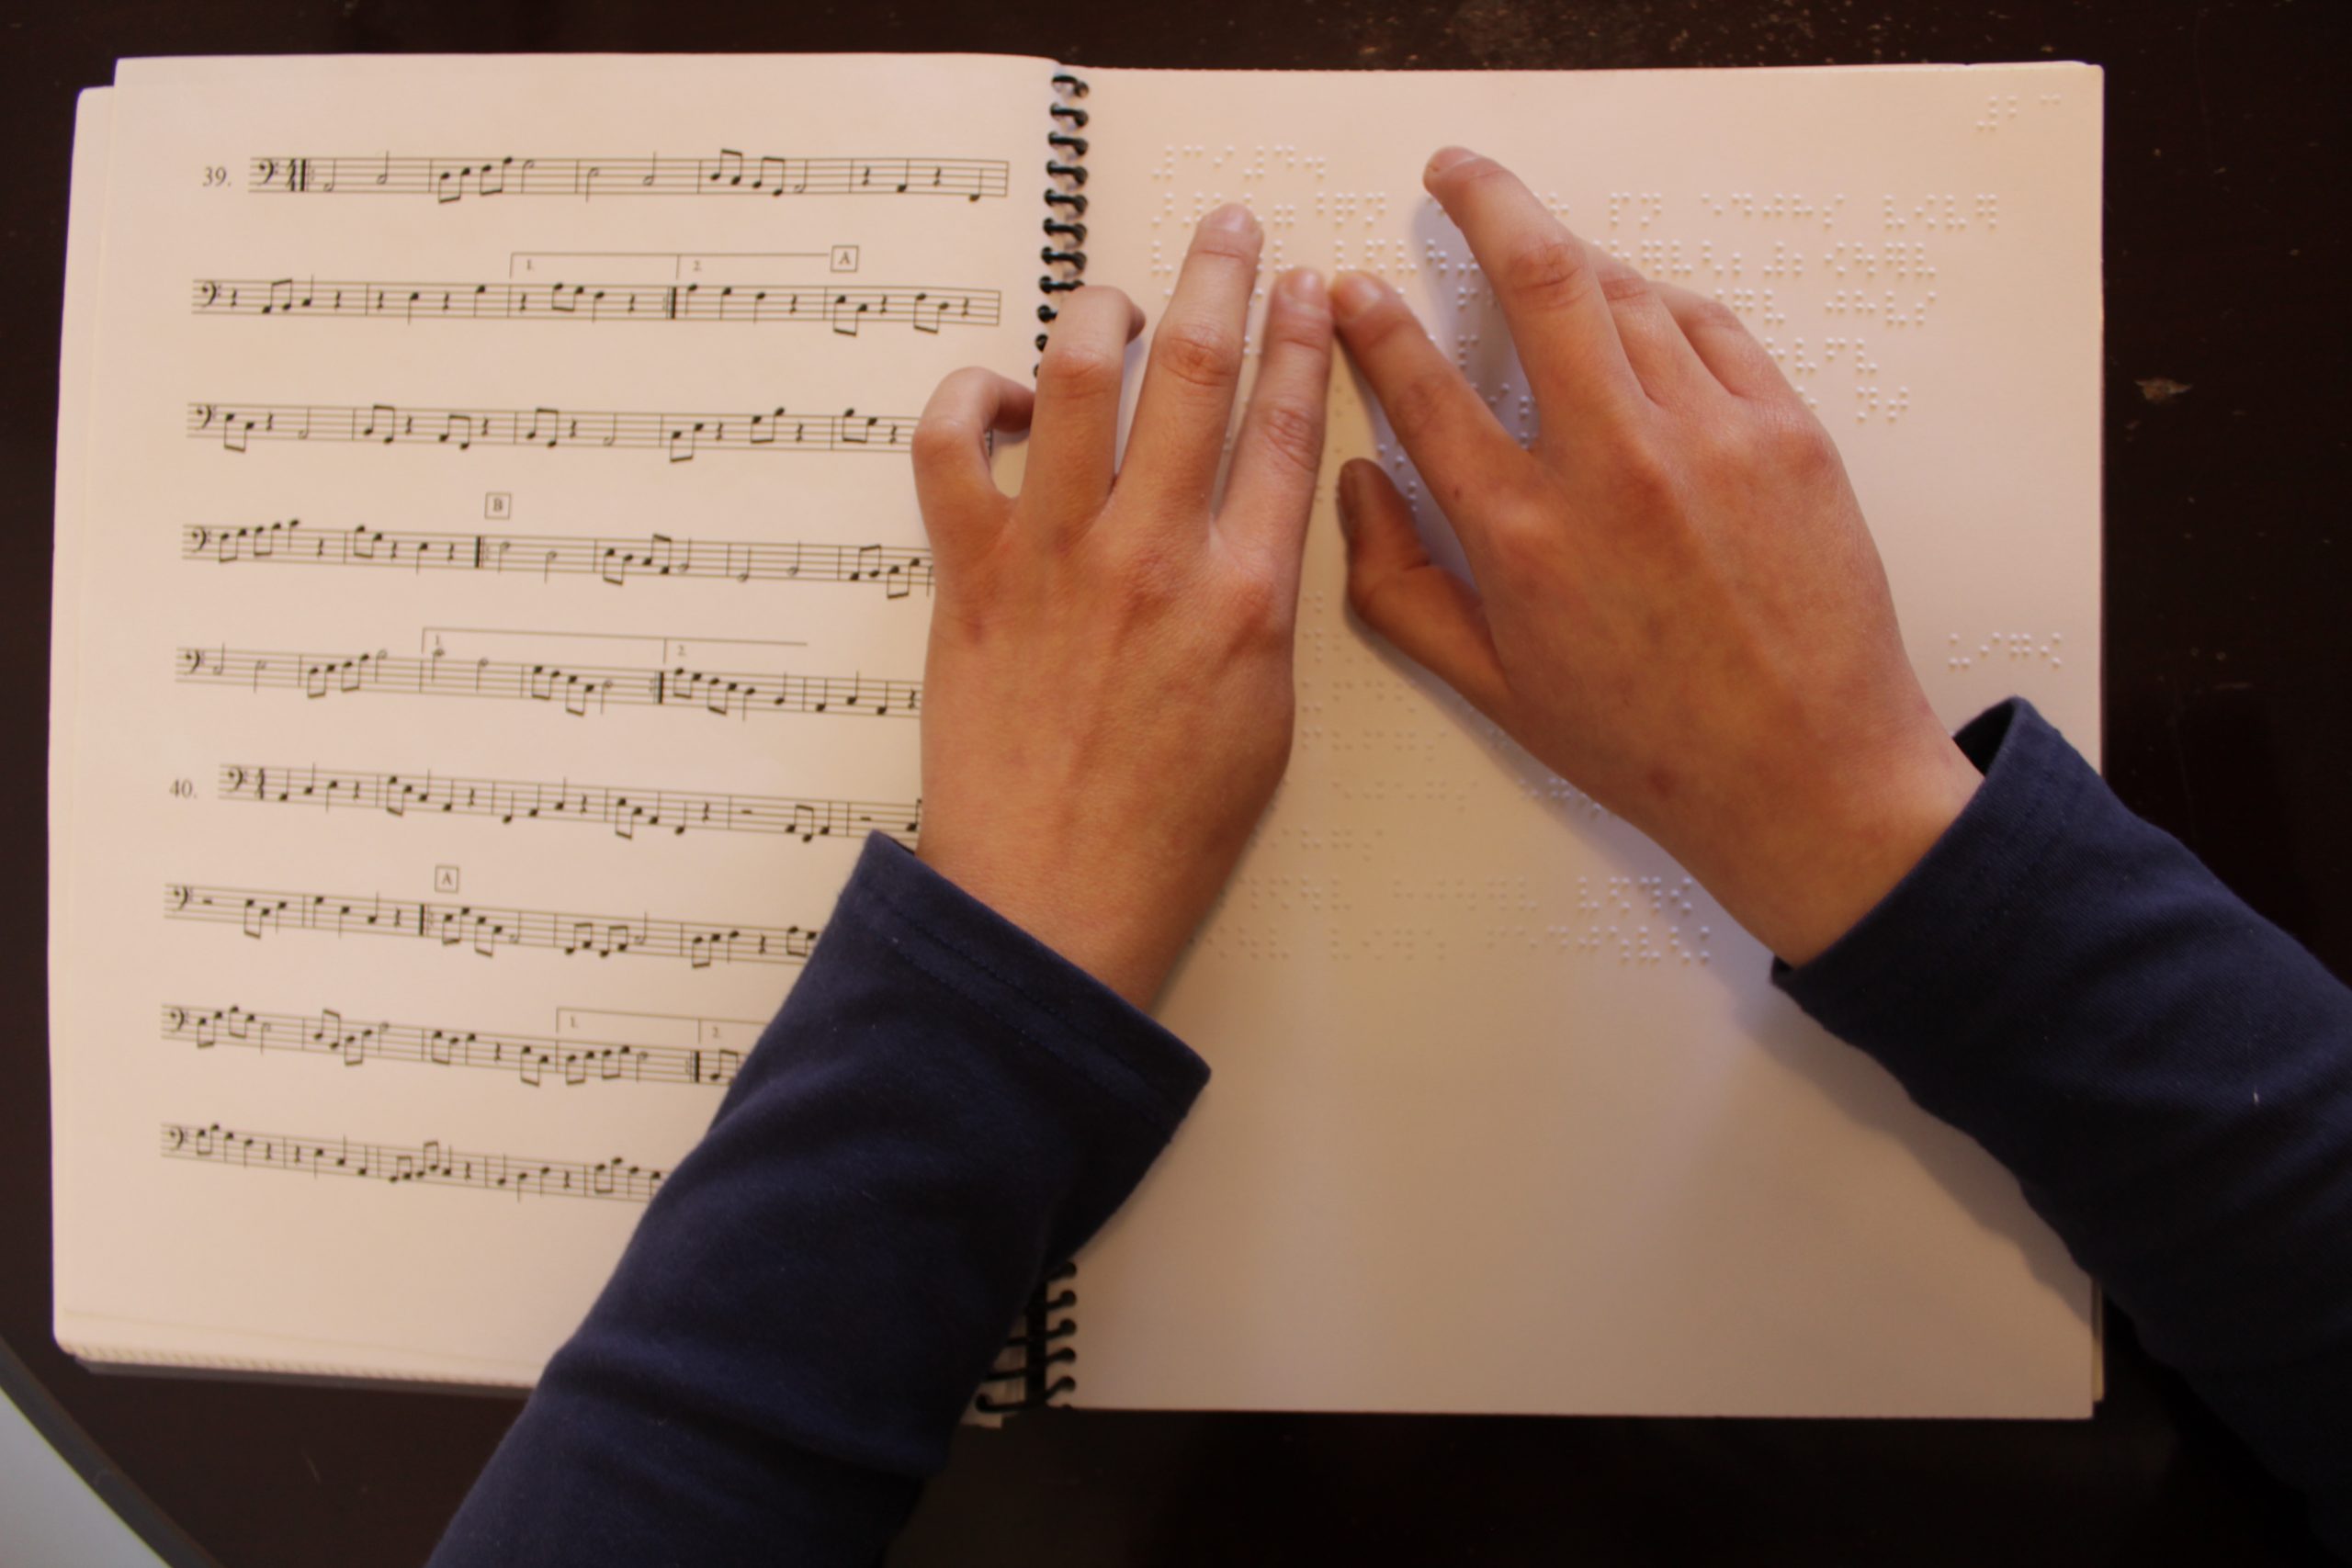 Manual de solfeo inclusivo abierto, a la izquierda partituras en tinta y a la derecha en Braille, dos manos leen el Braille.